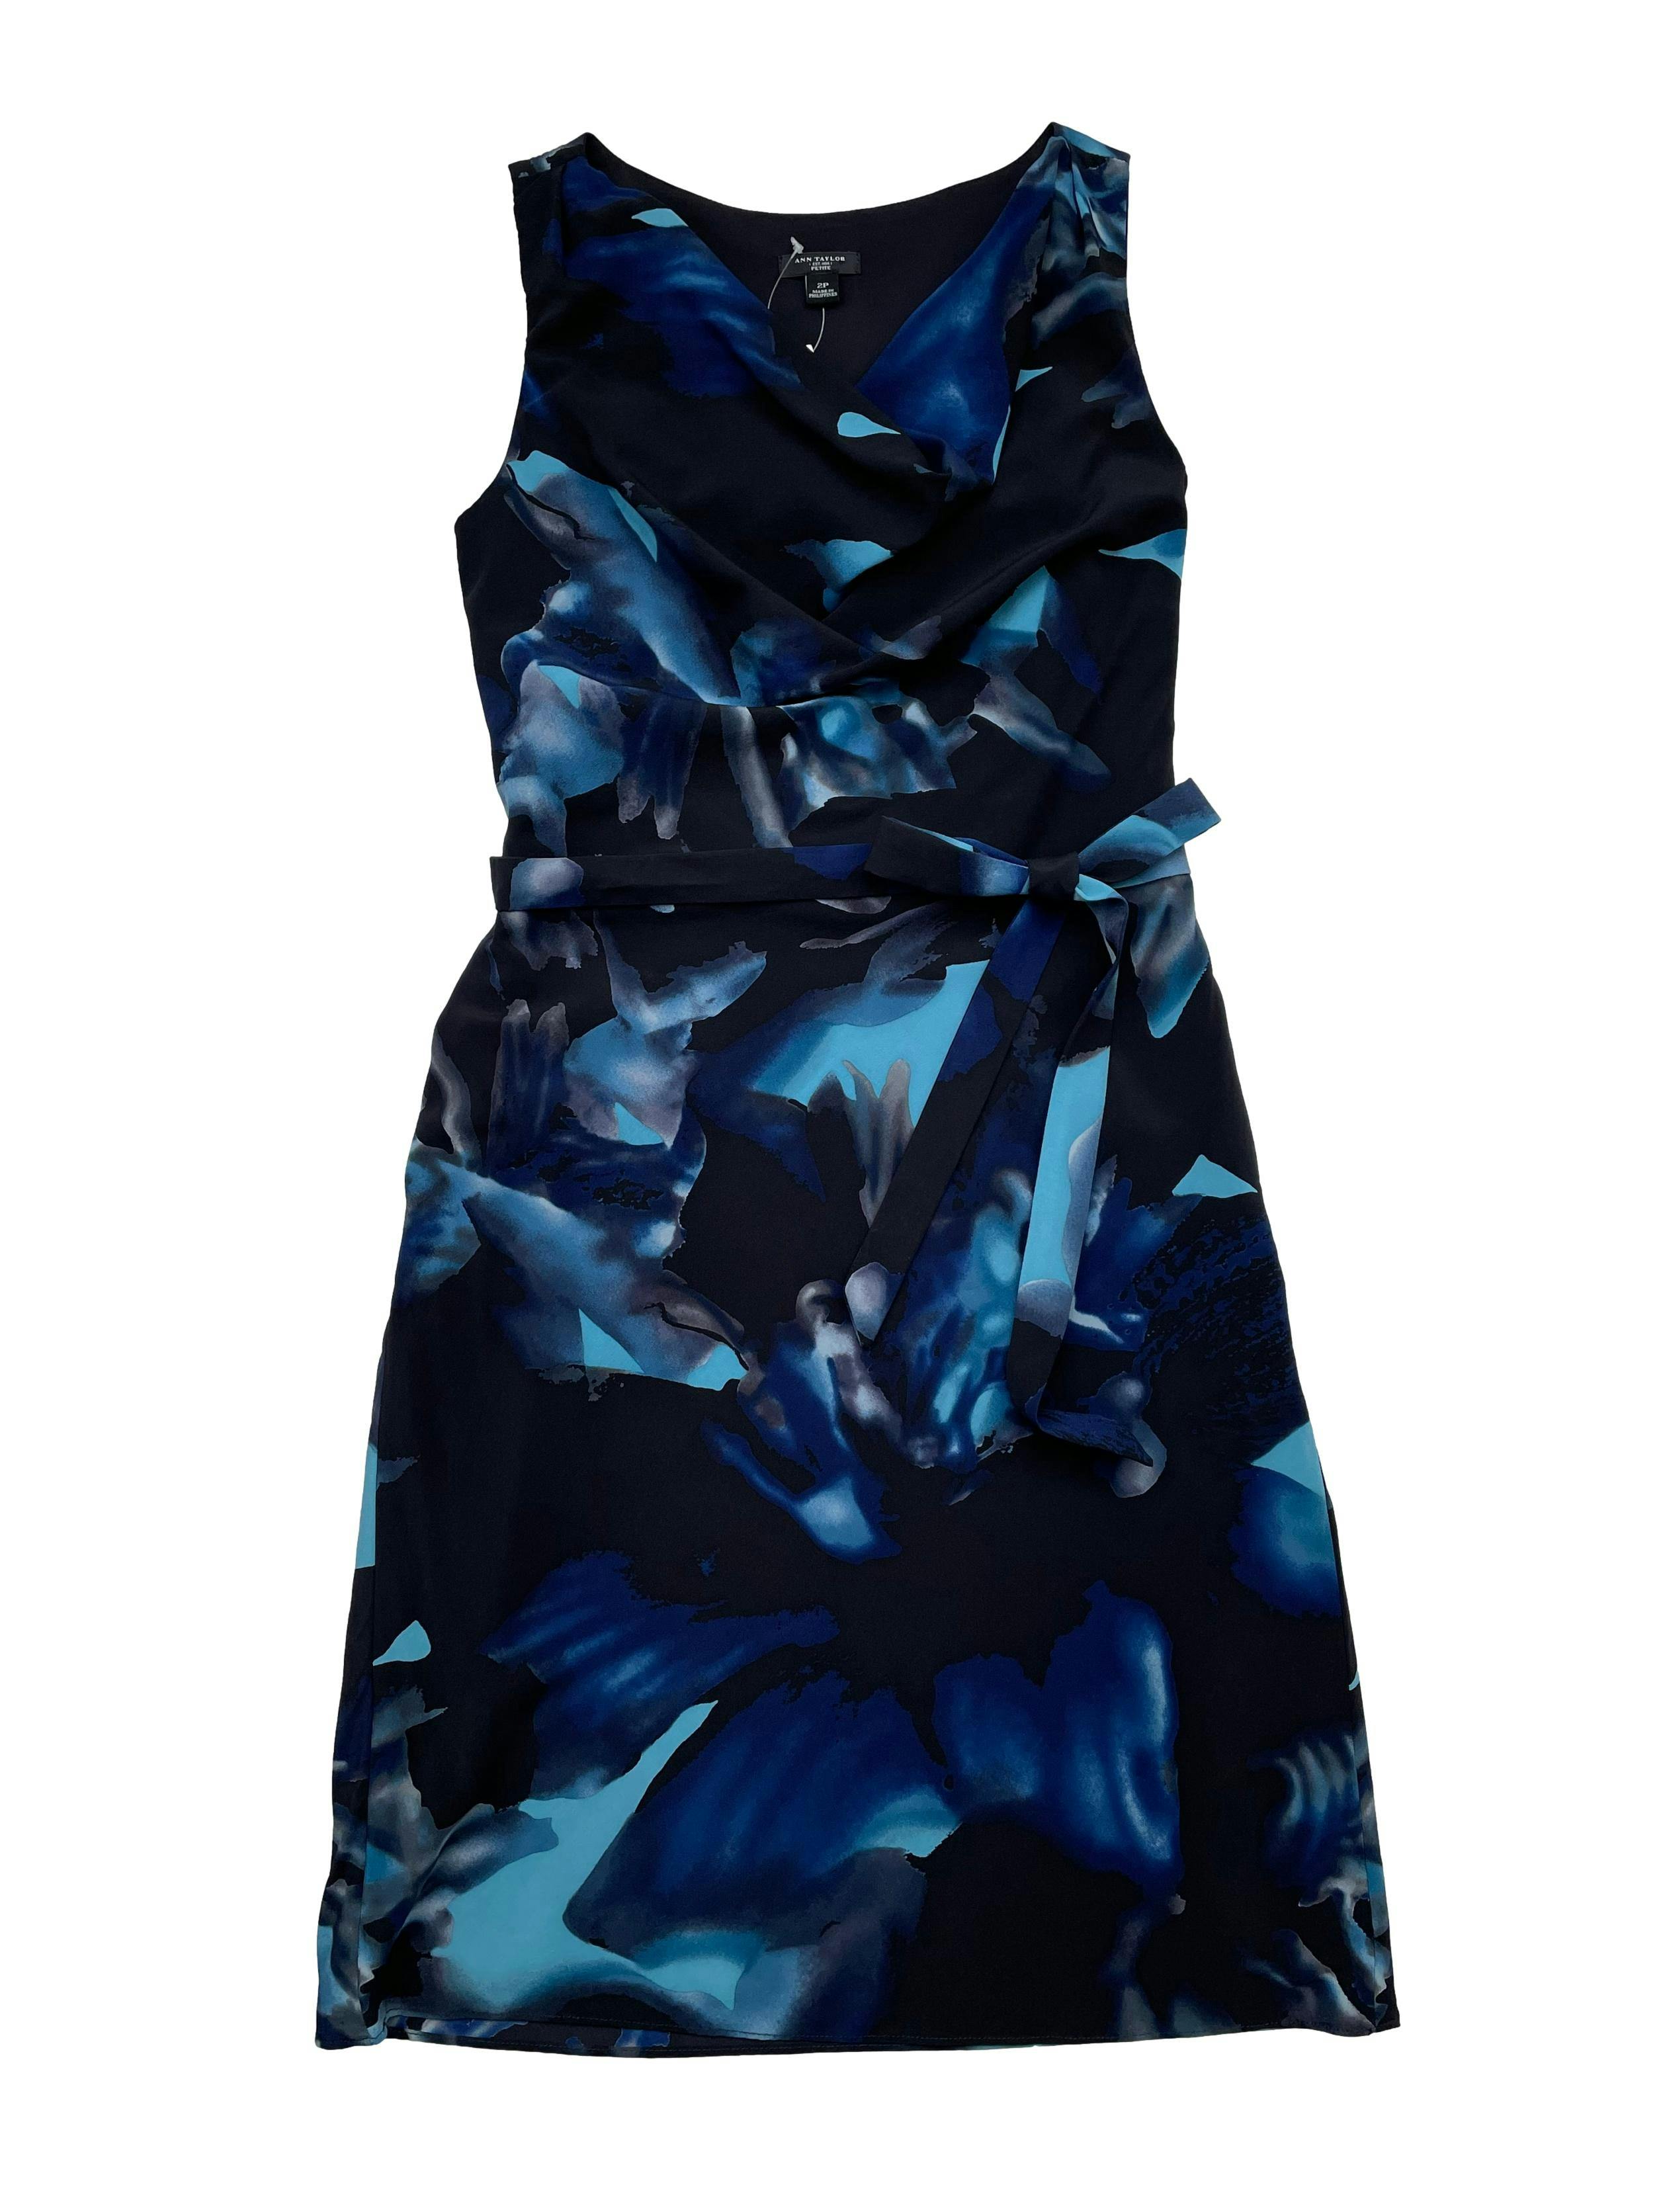 Vestido Ann Taylor negro con estampado en tonos azules, 92% seda, forrado, cuello caído, cierre lateral y cinto para amarrar. Busto 90cm Largo 90cm